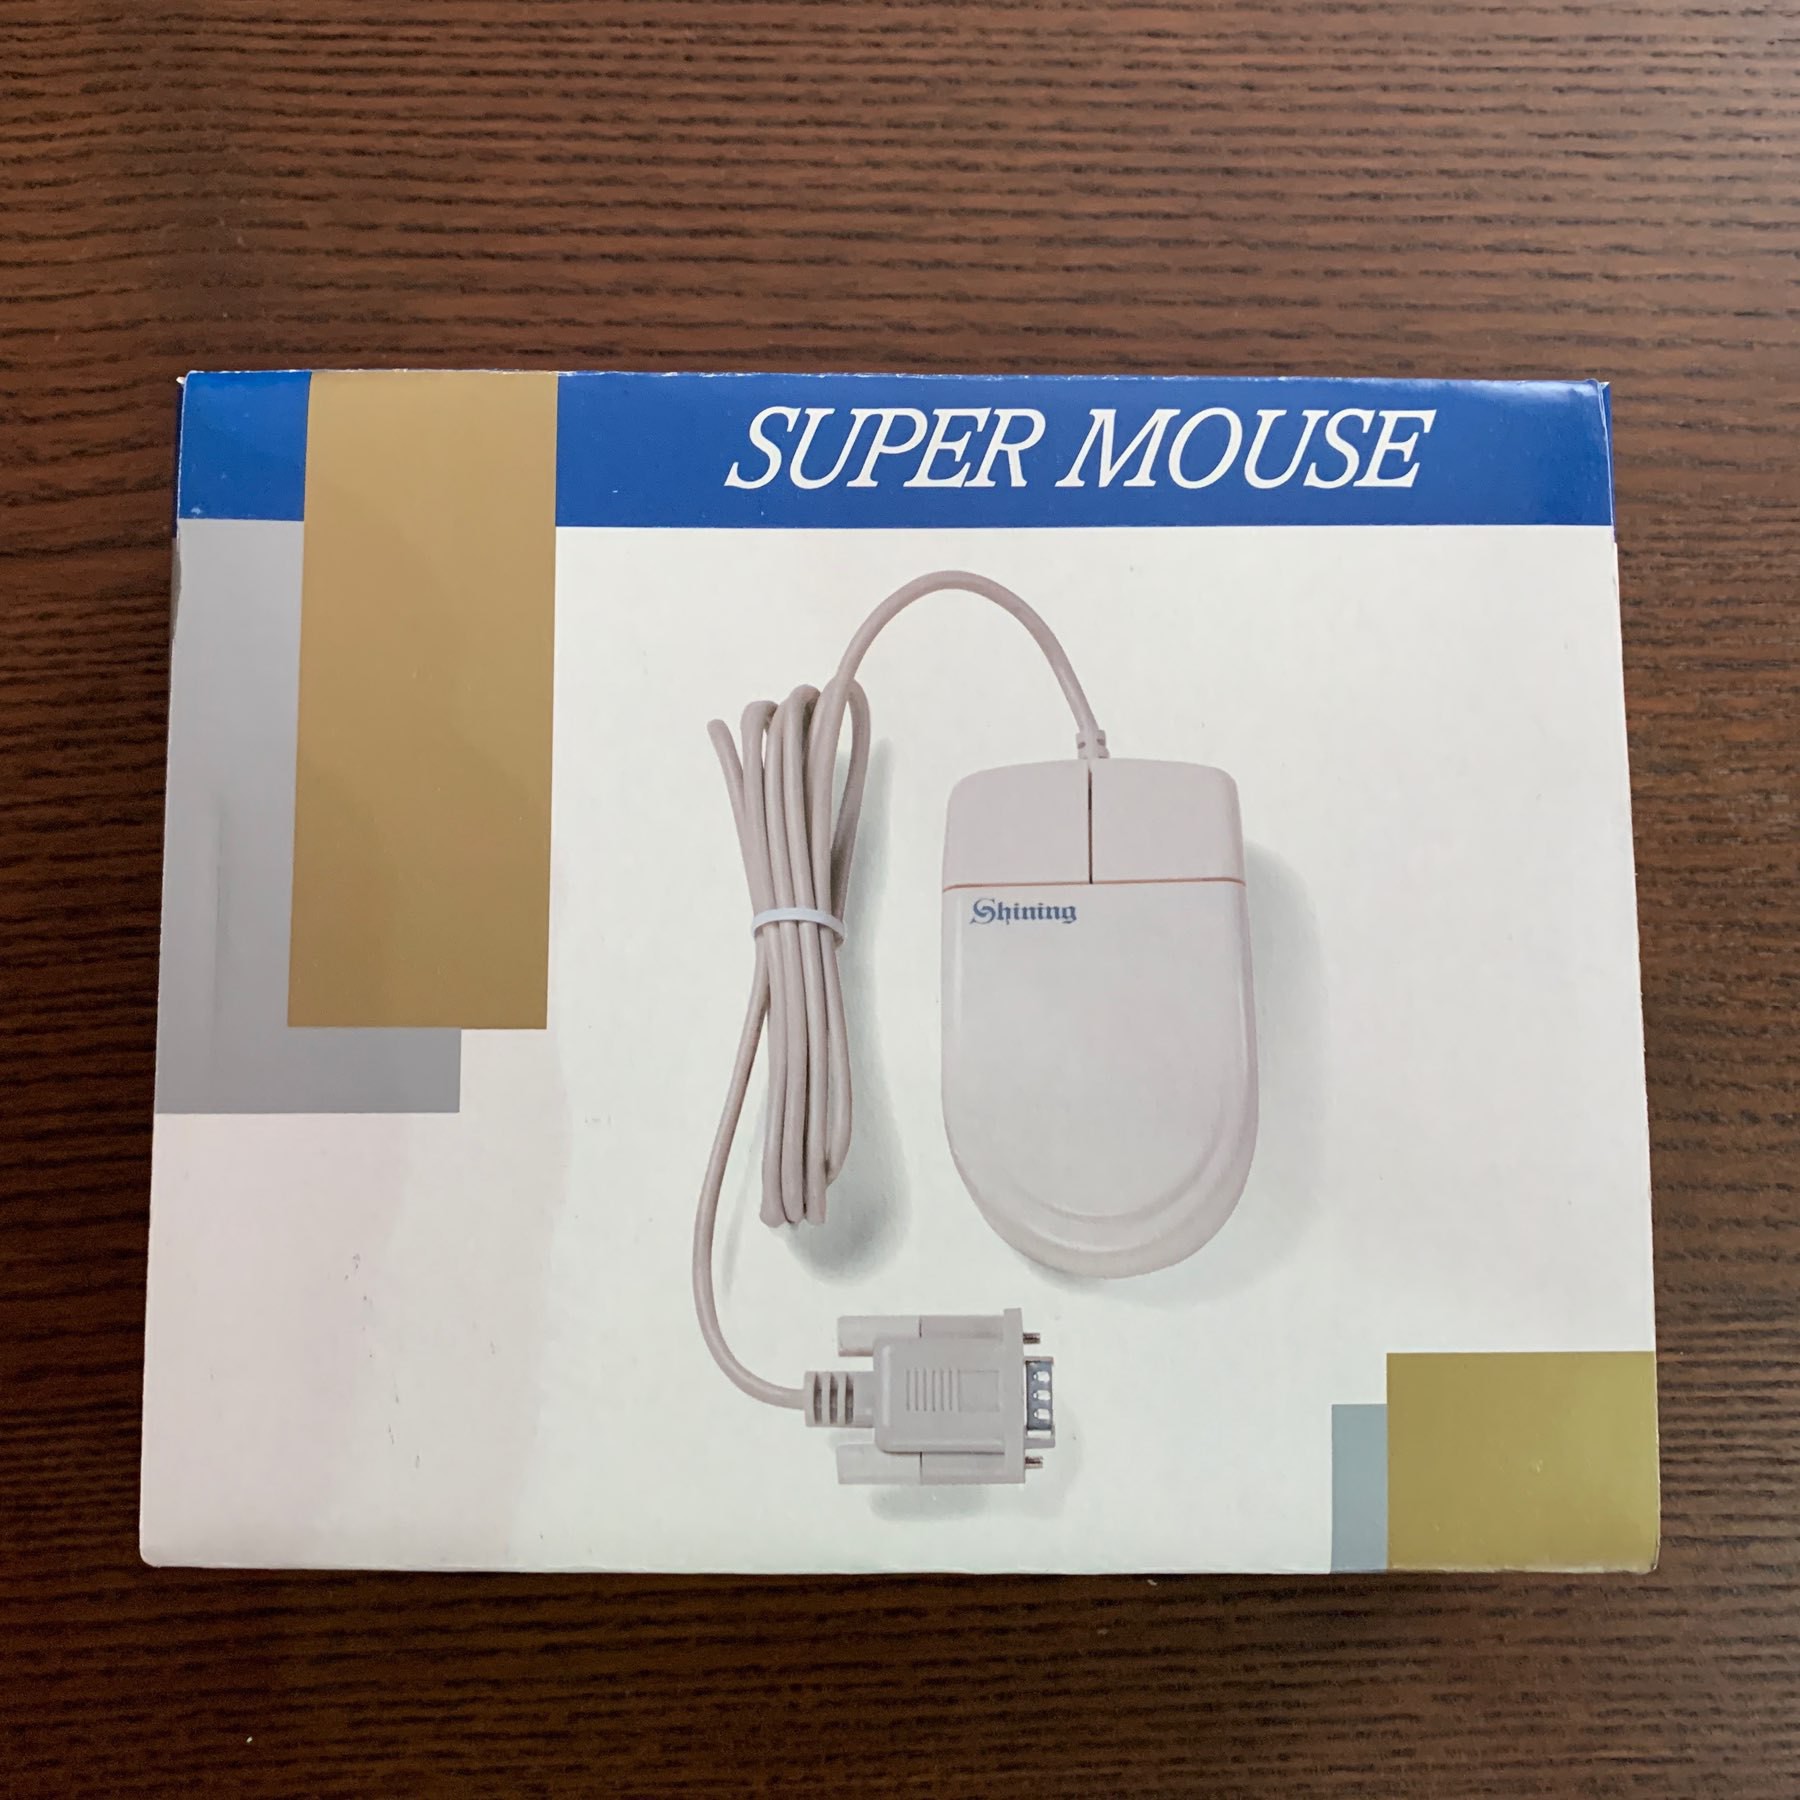 A "Super Mouse" in its original box